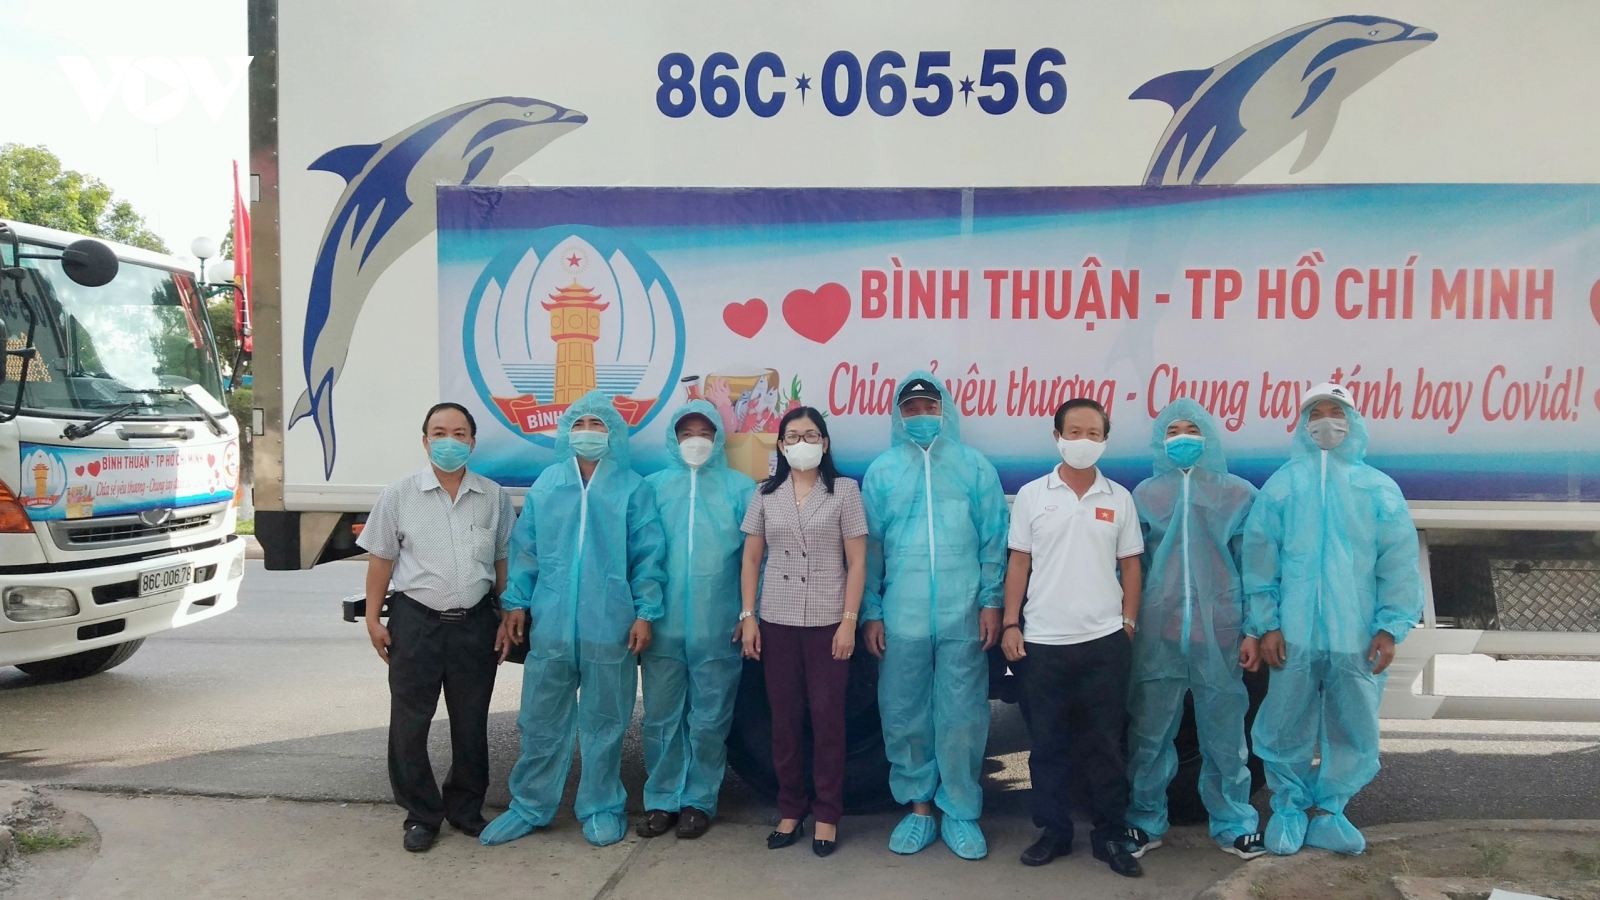 4 chuyến hàng của Bình Thuận đến với nhân dân TP.HCM